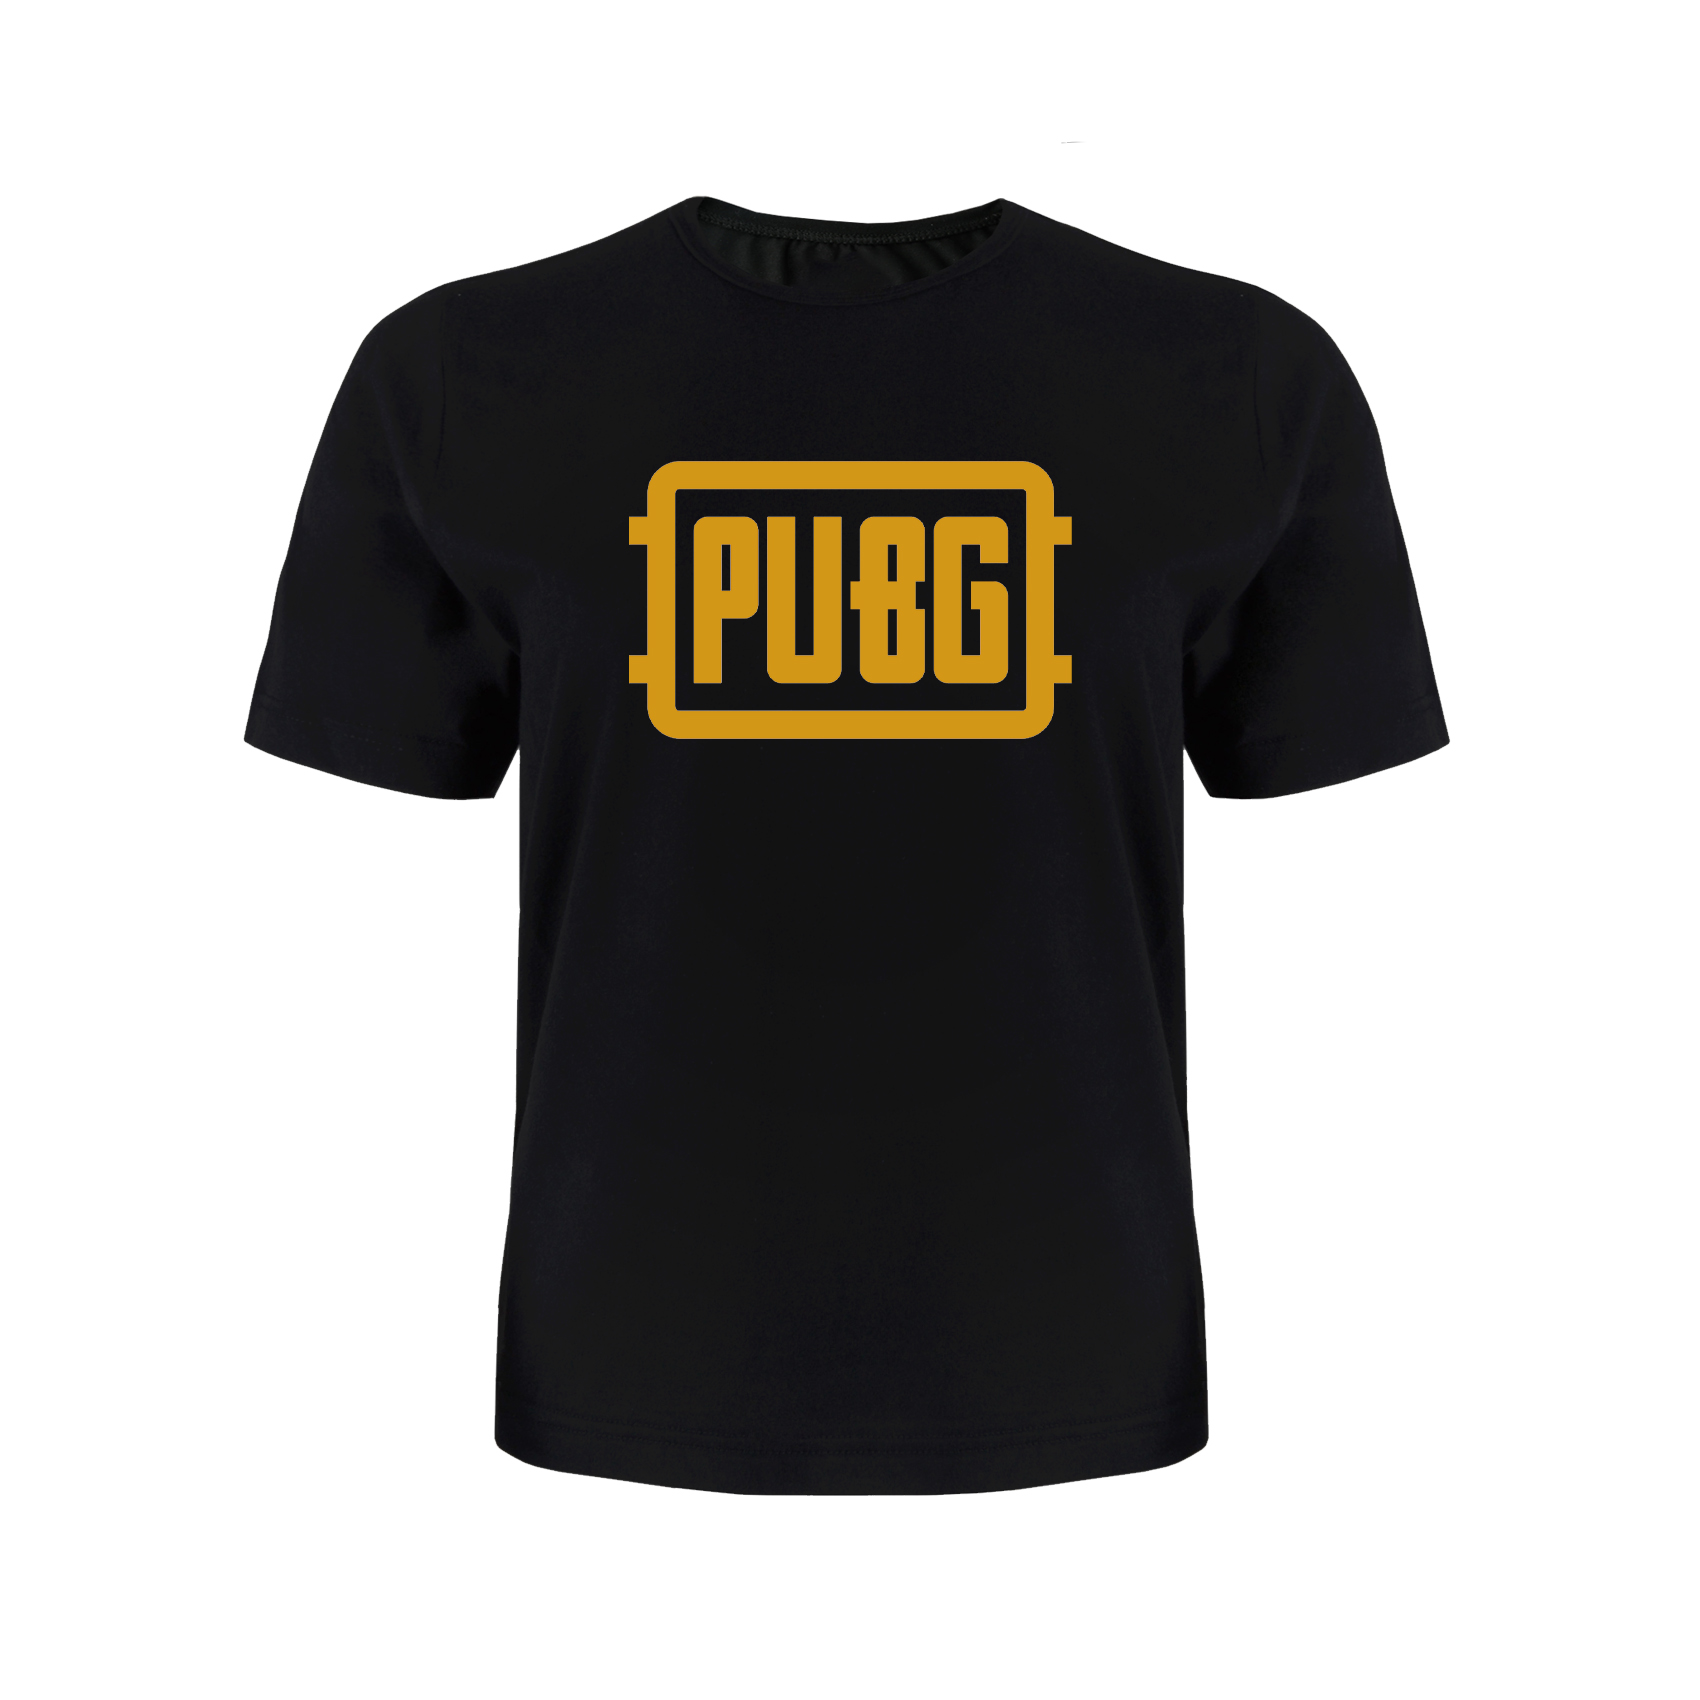 تی شرت آستین کوتاه پسرانه مدل PUBG کد P011 رنگ مشکی